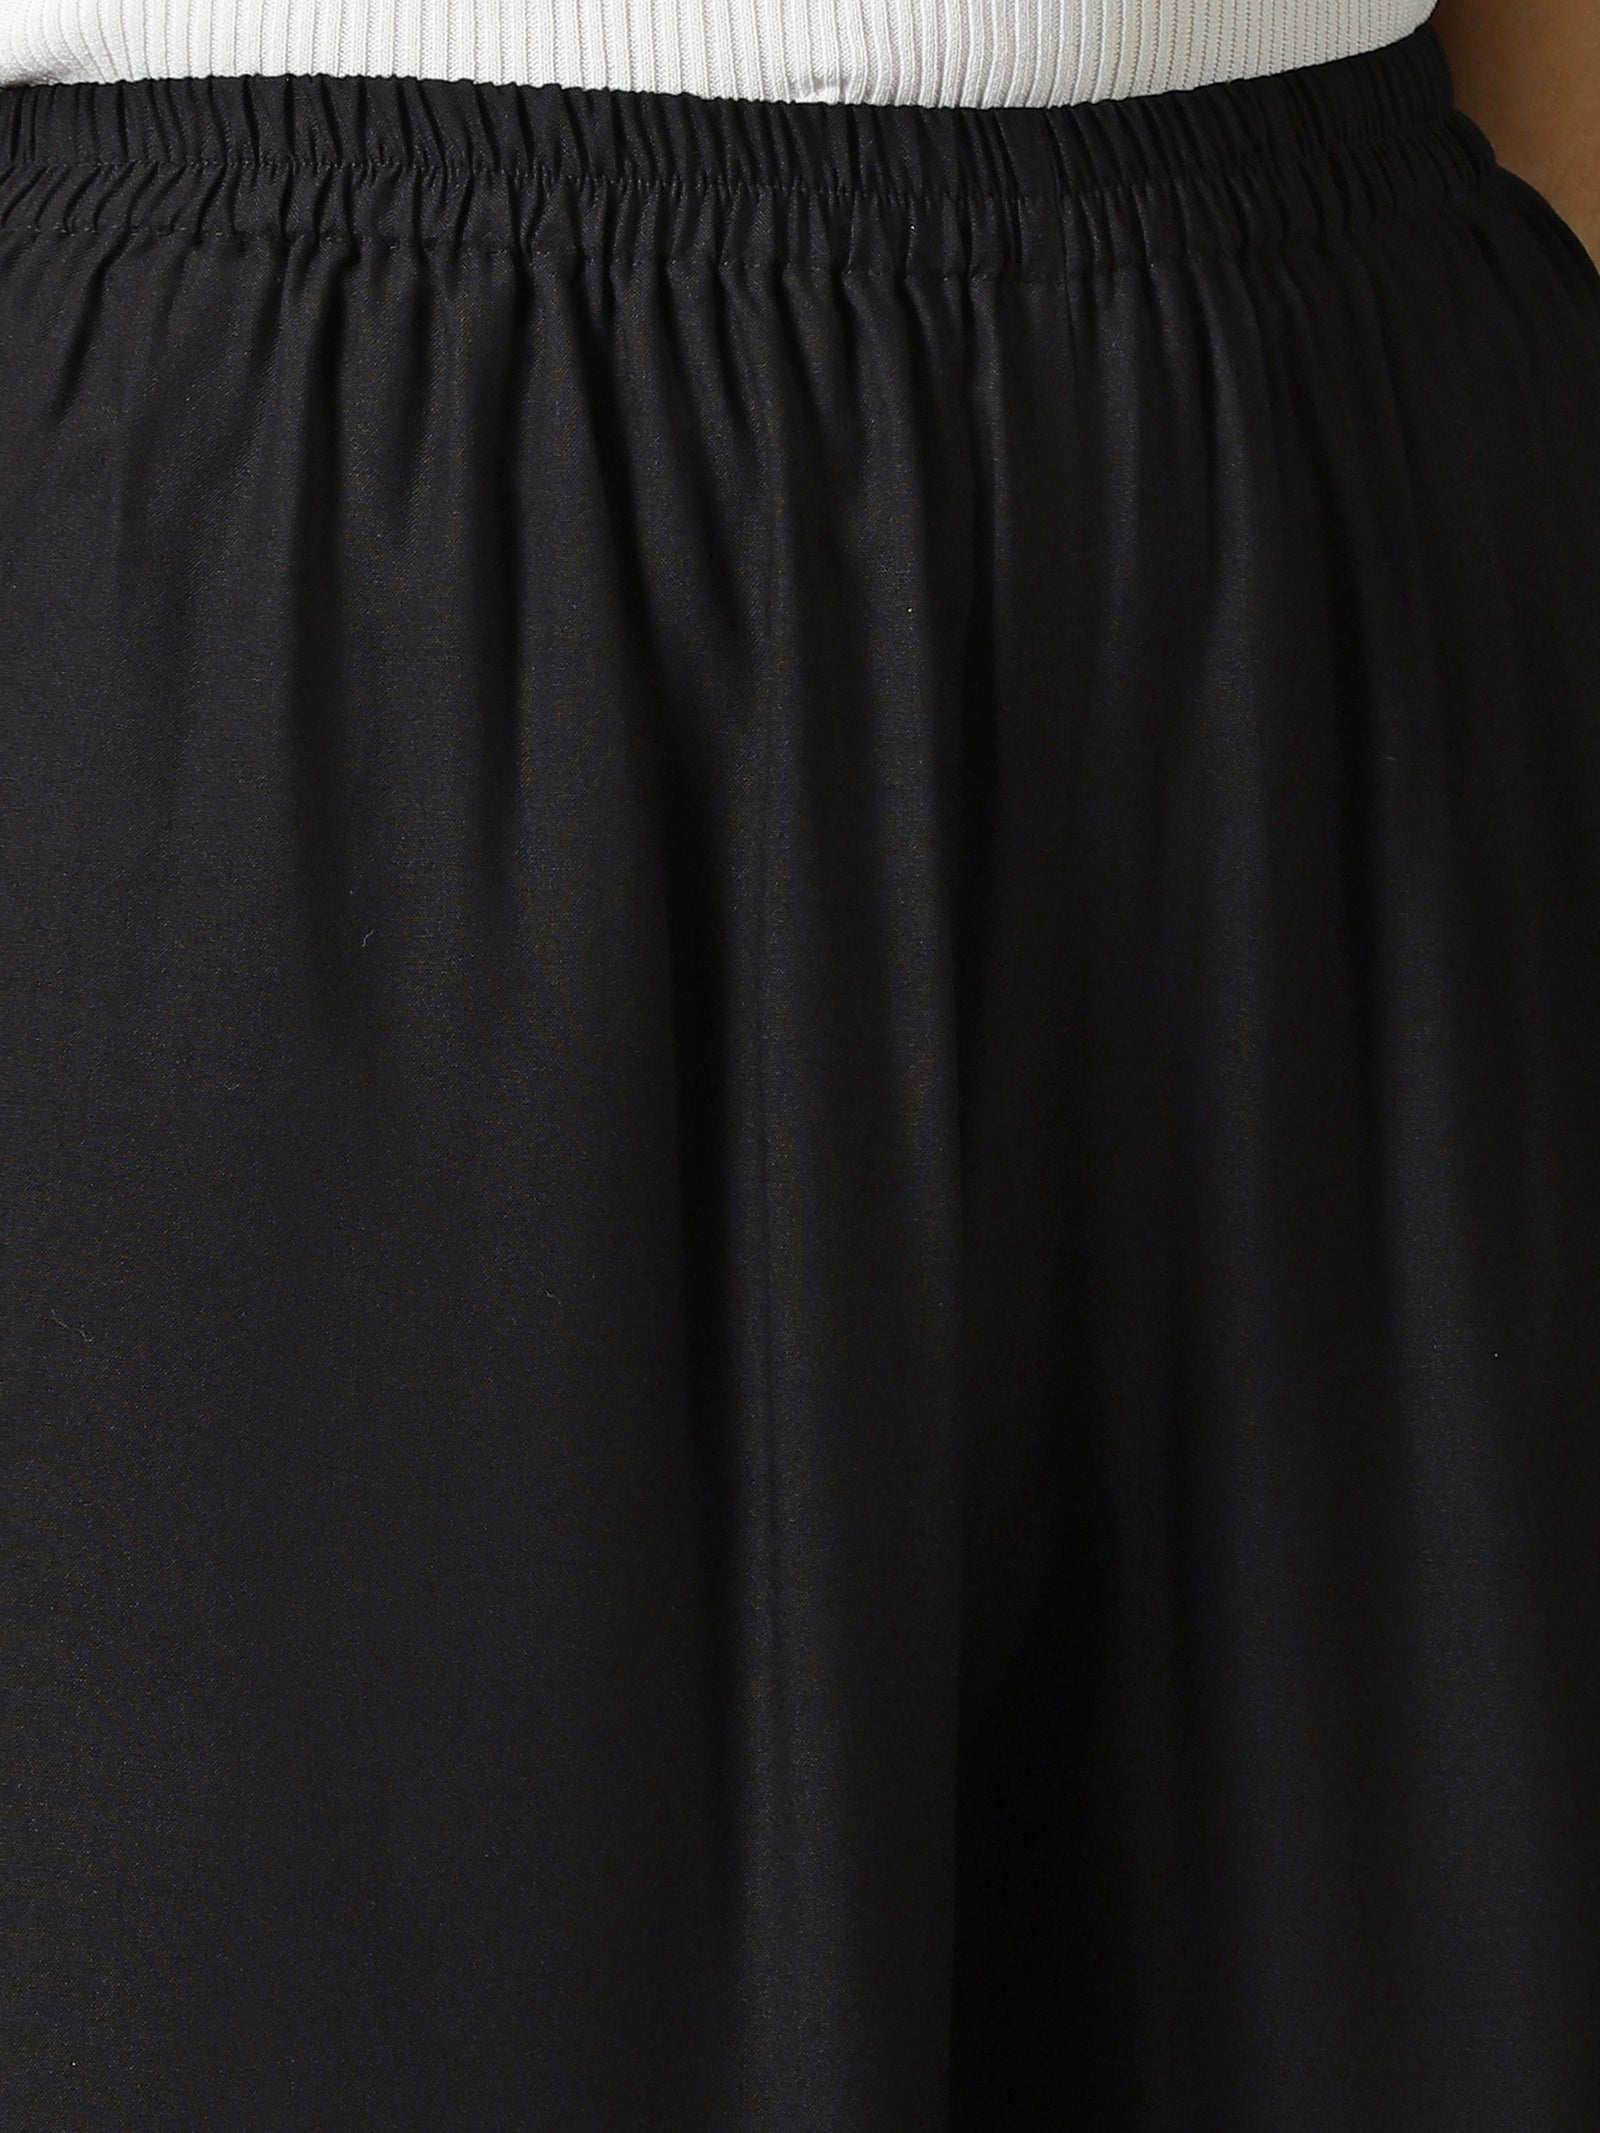 Women Black Rayon Half Pant